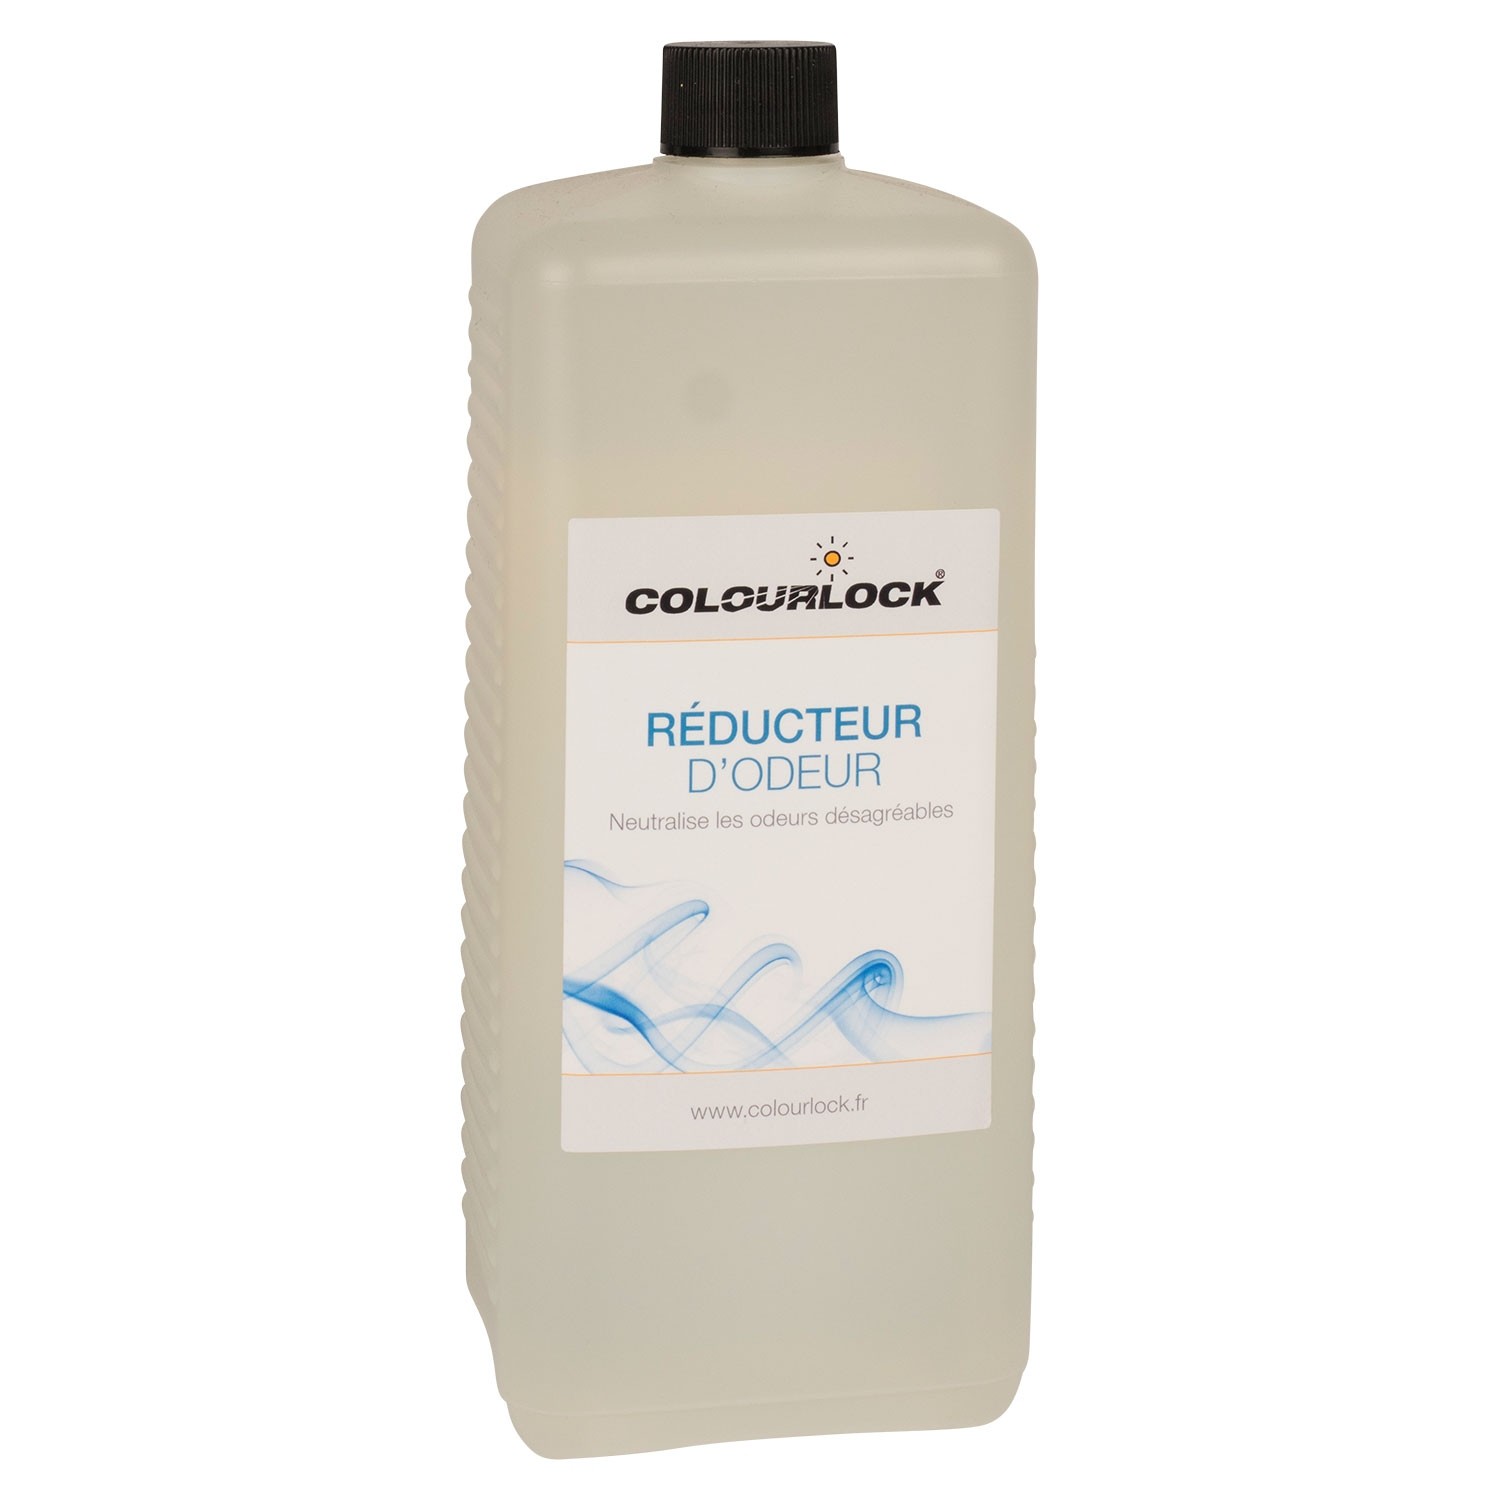 Reducteur d’odeur COLOURLOCK, 1 litre